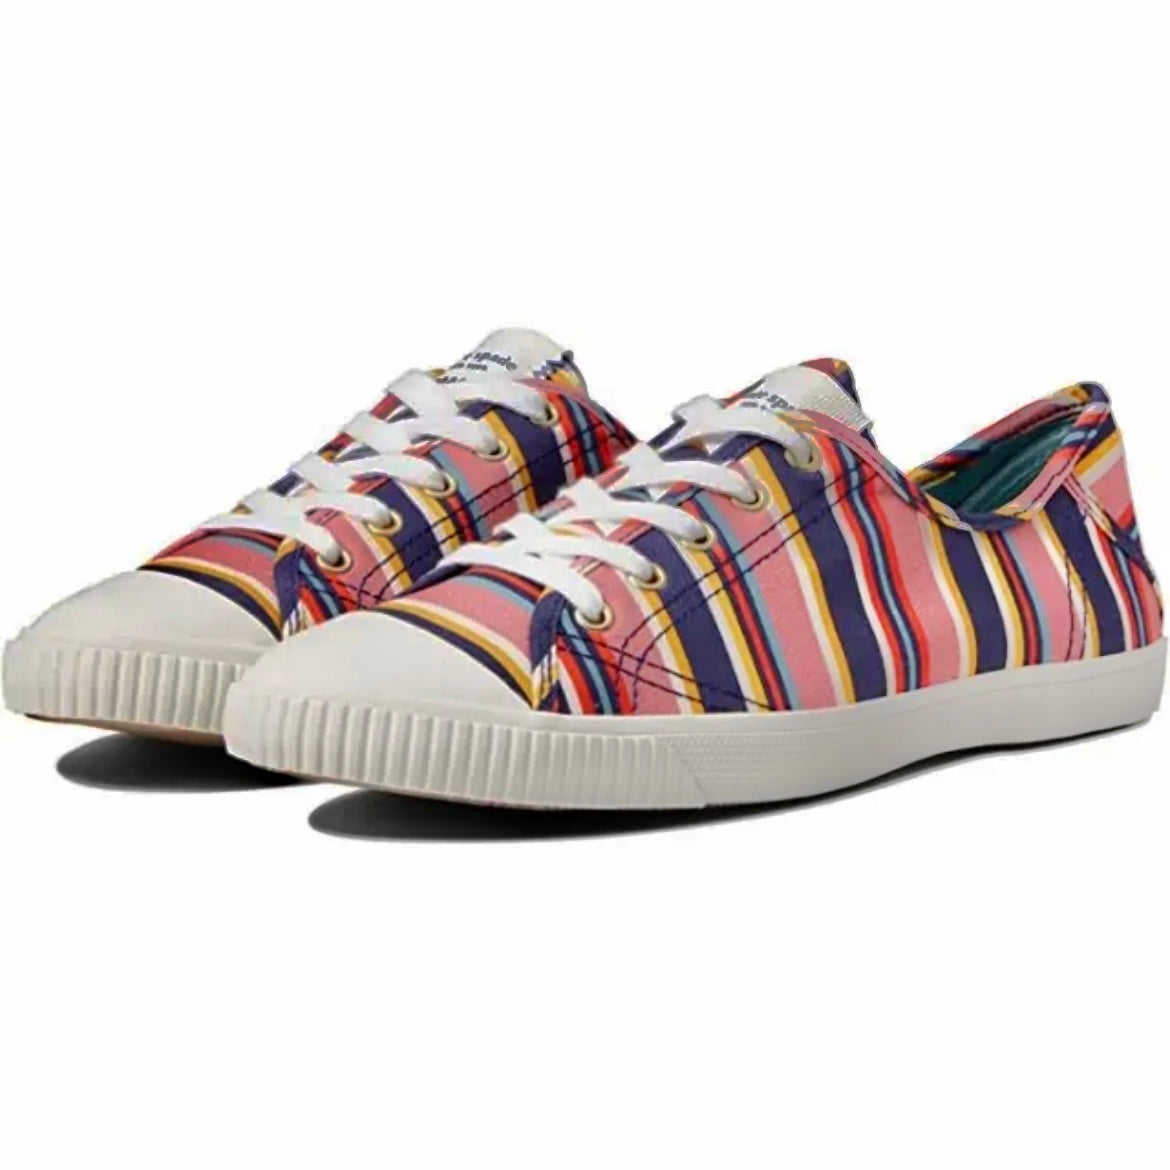 TENNISON Sidewalk Stripe Multicolor Lace Up Size 9.5B Women's Sneakers